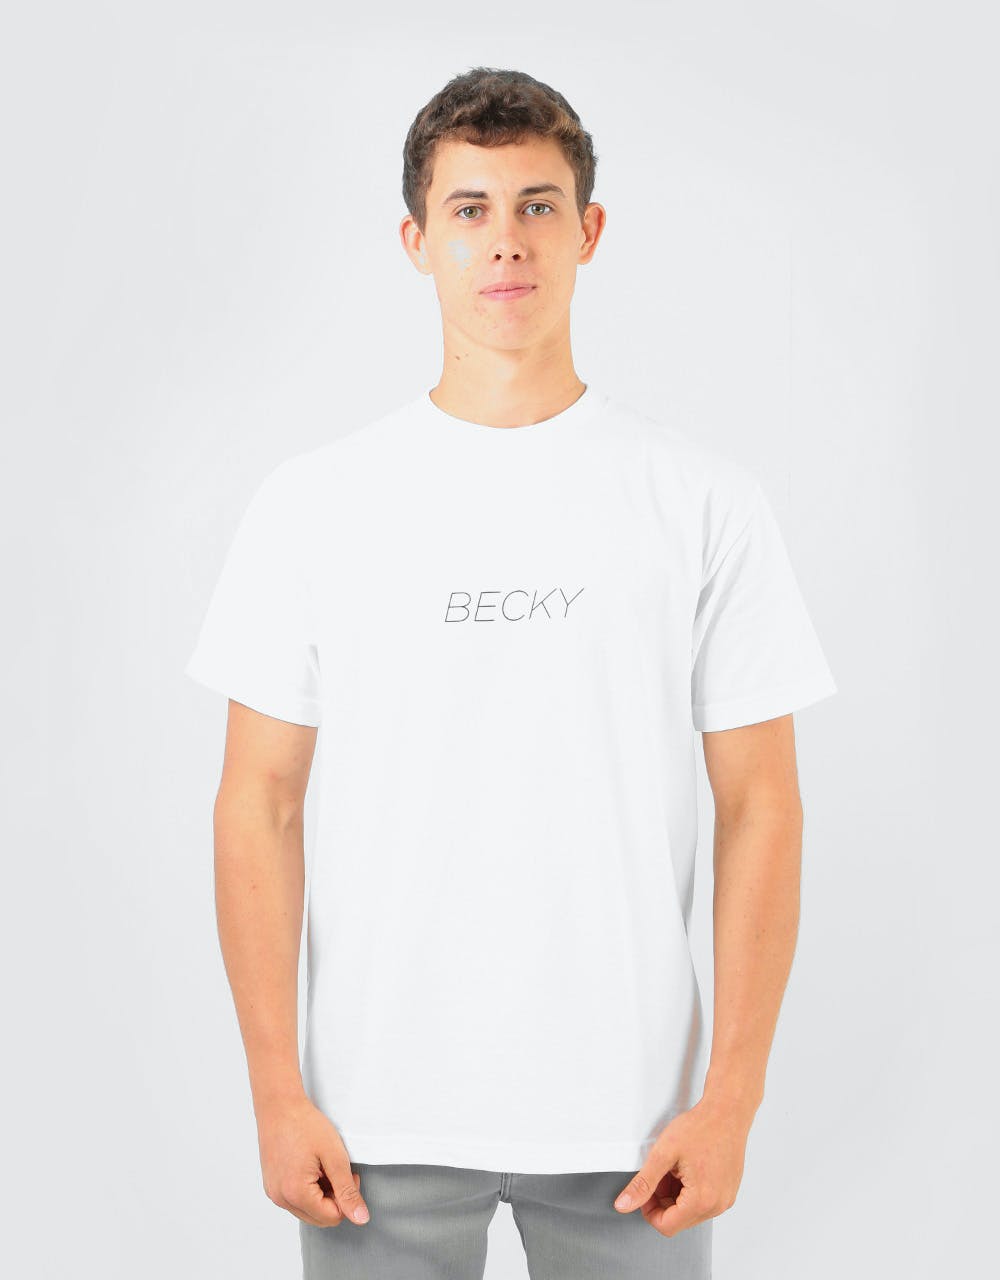 Becky Factory Legs T-Shirt - White